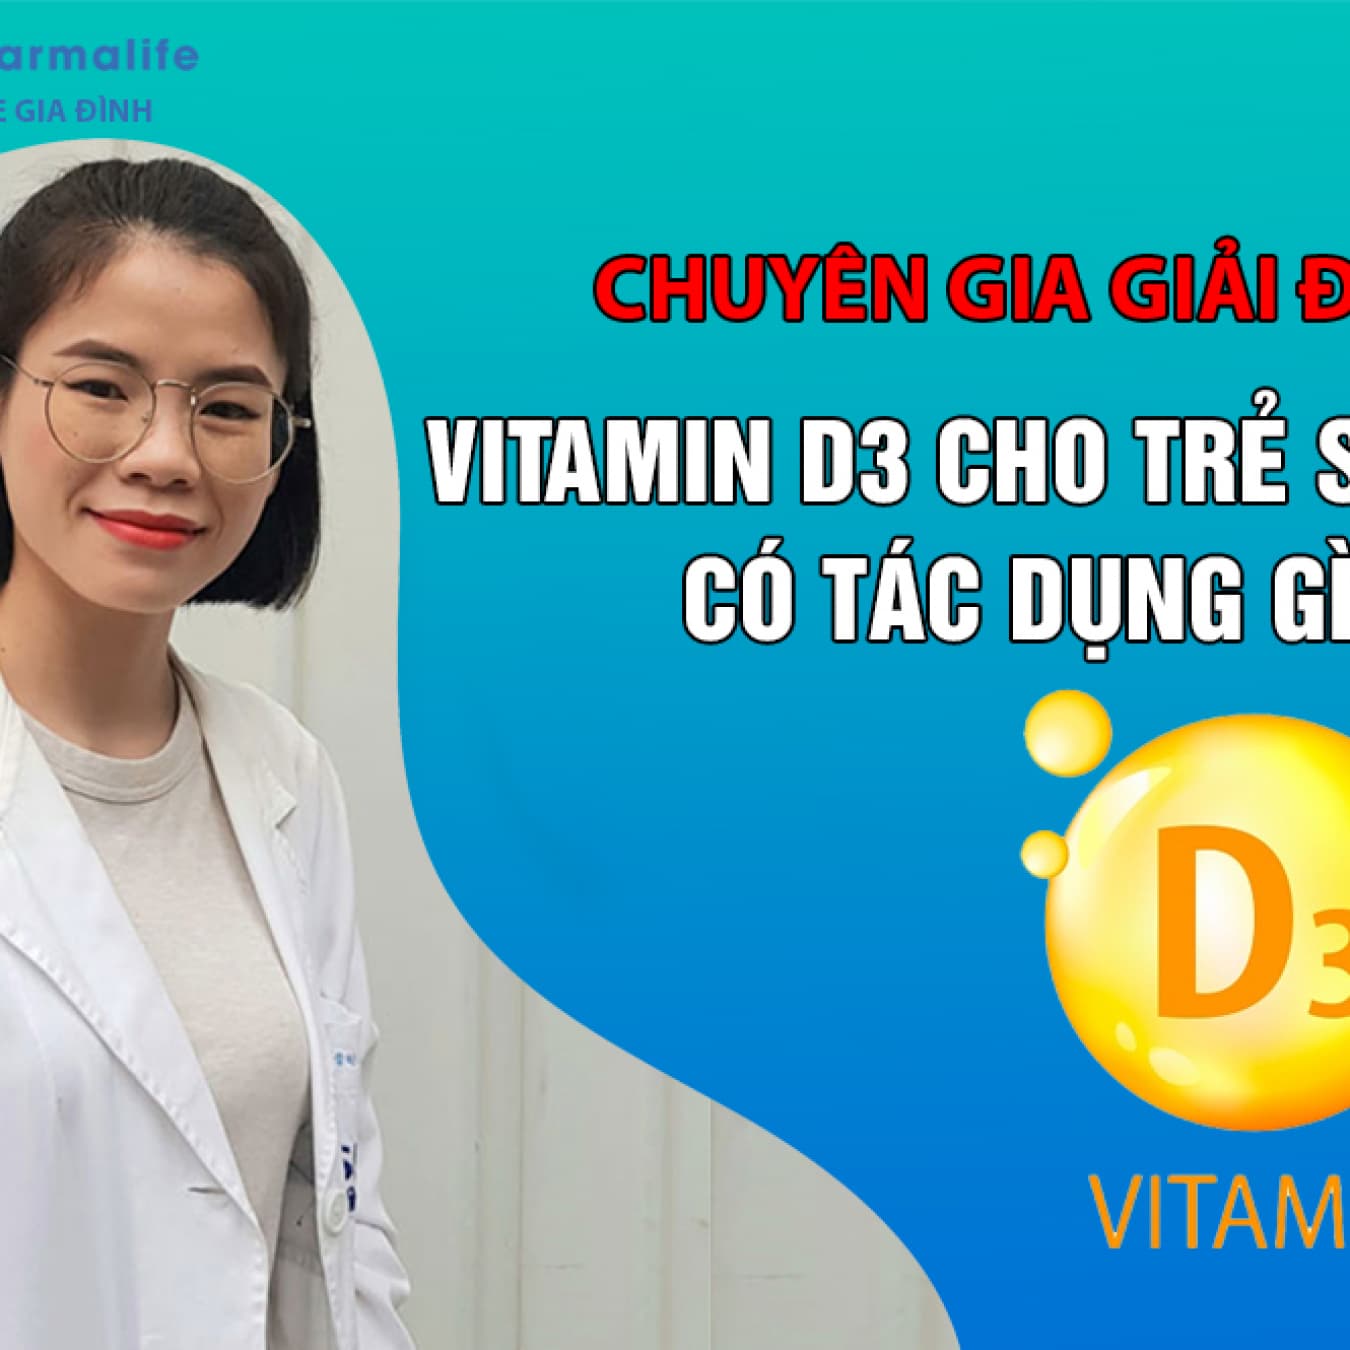 Chuyên gia giải đáp: Vitamin D3 cho trẻ sơ sinh có tác dụng gì?